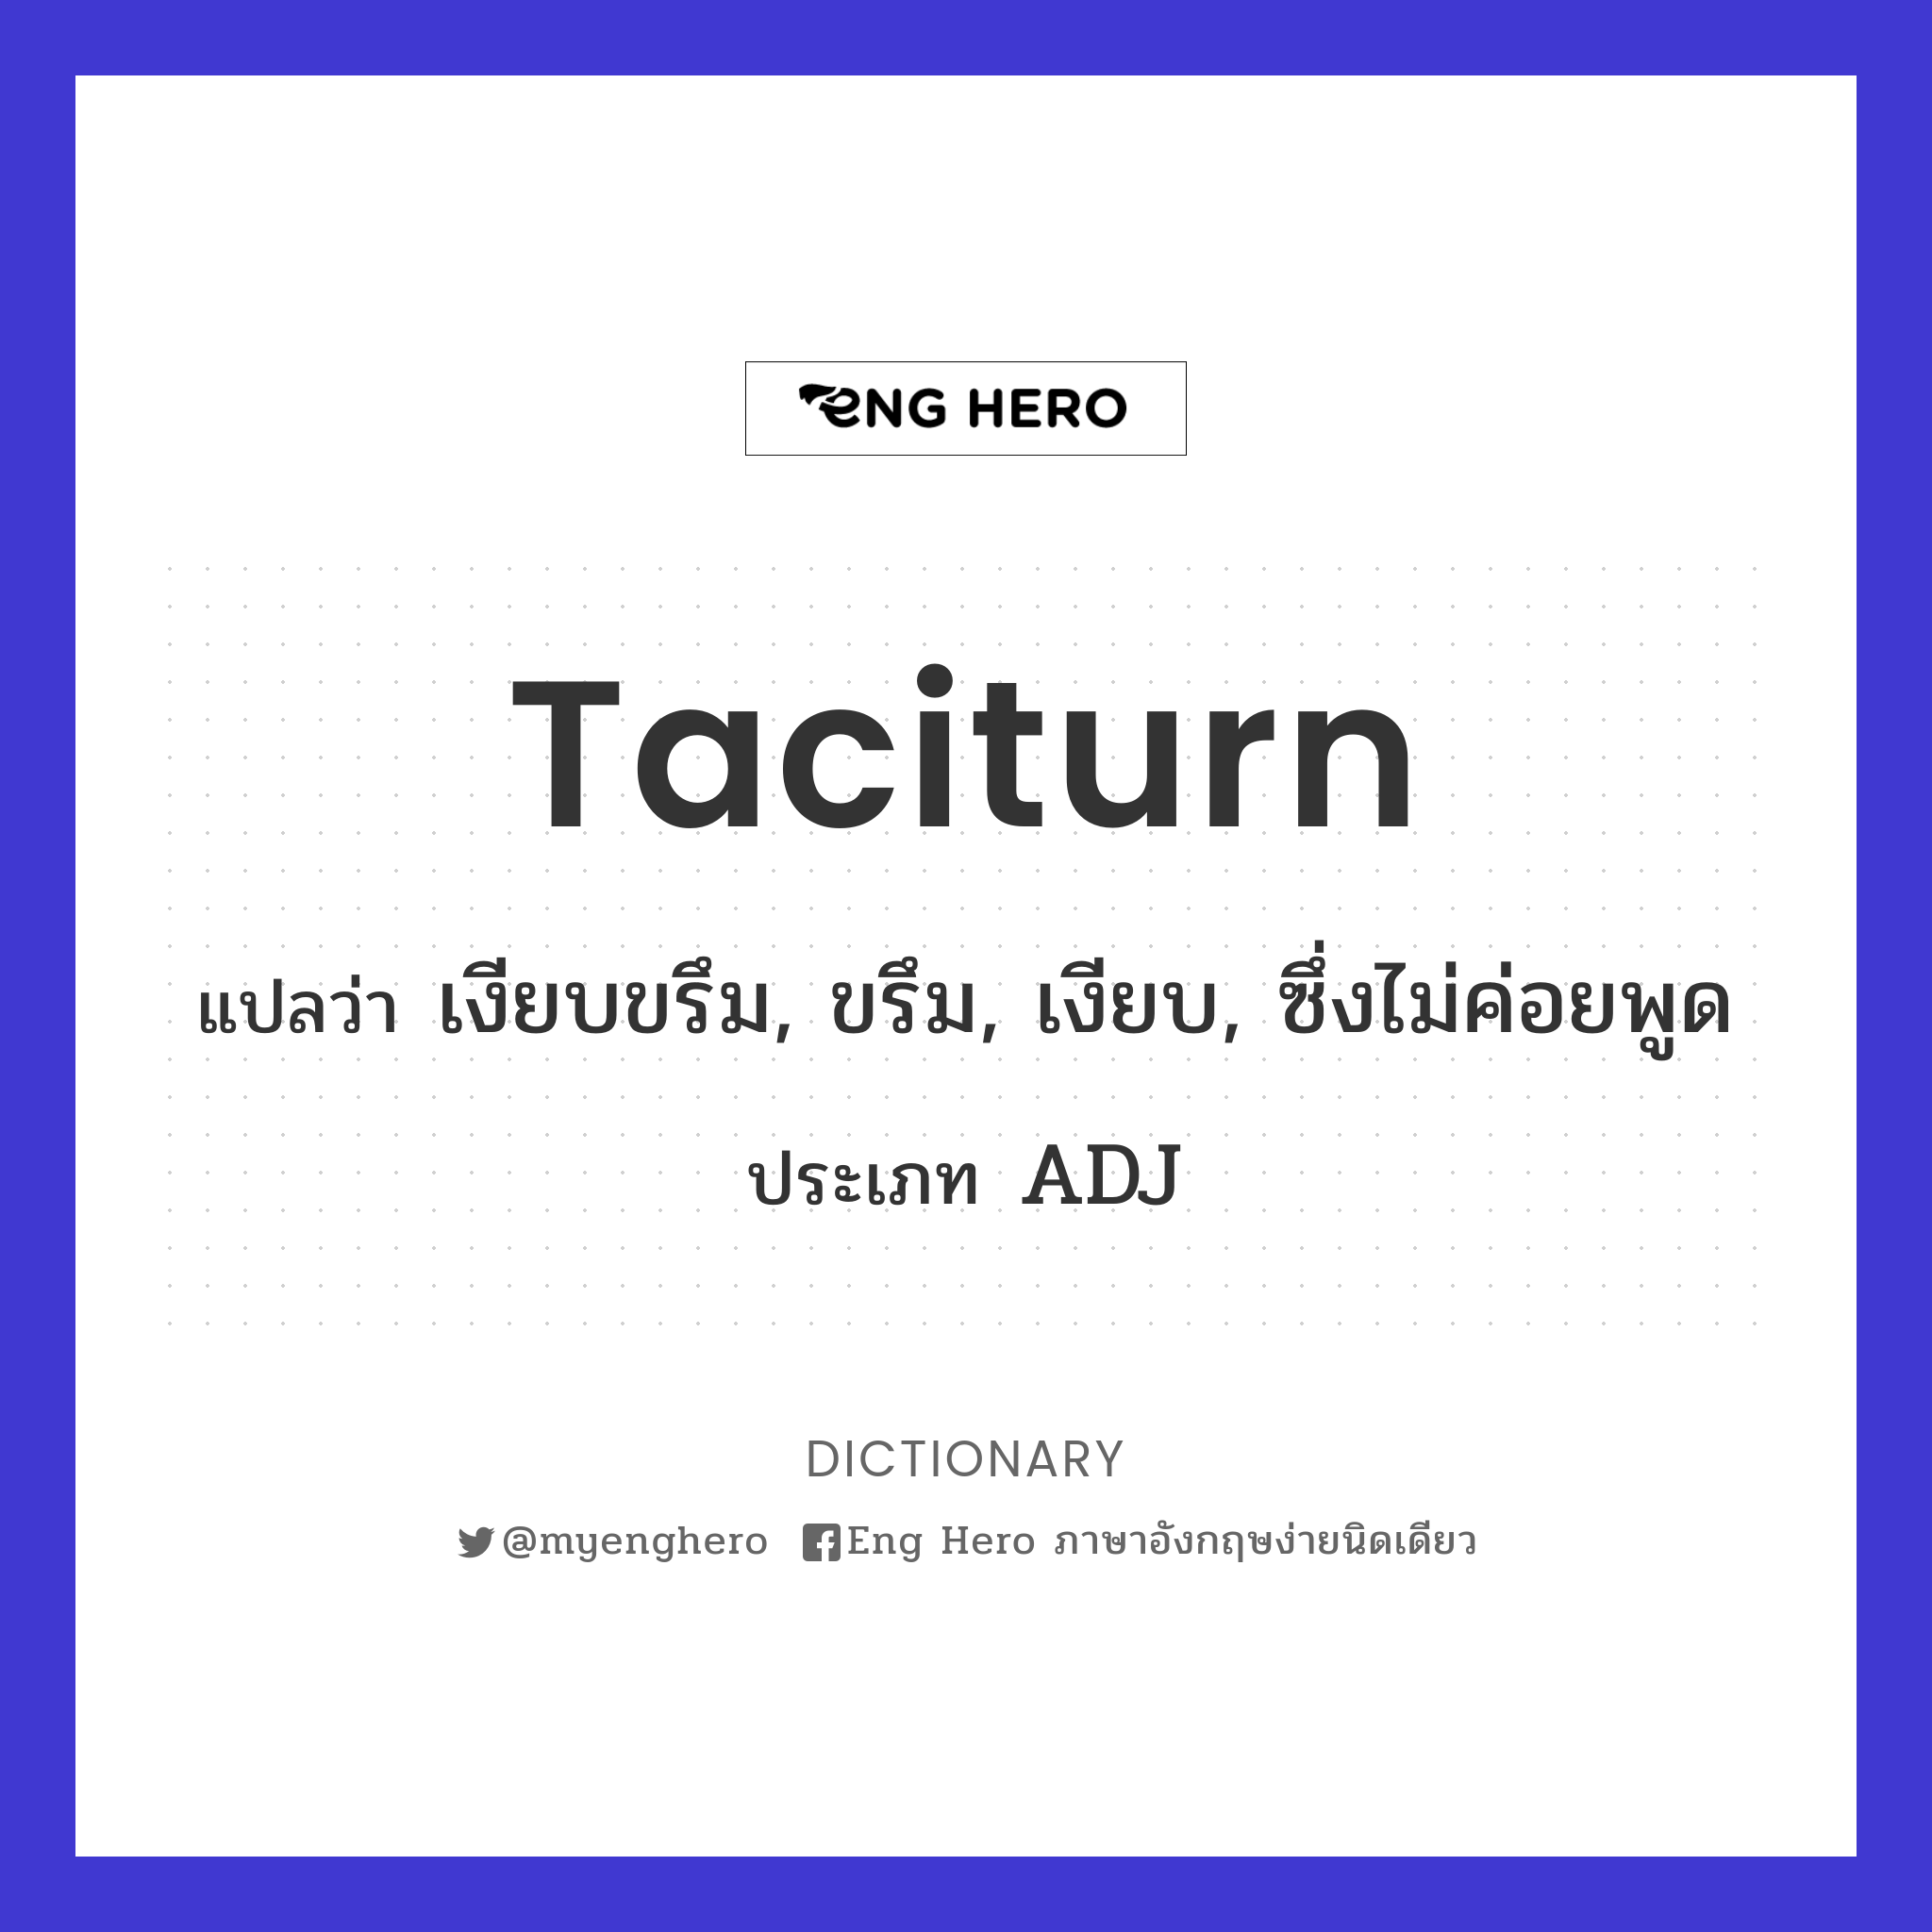 taciturn